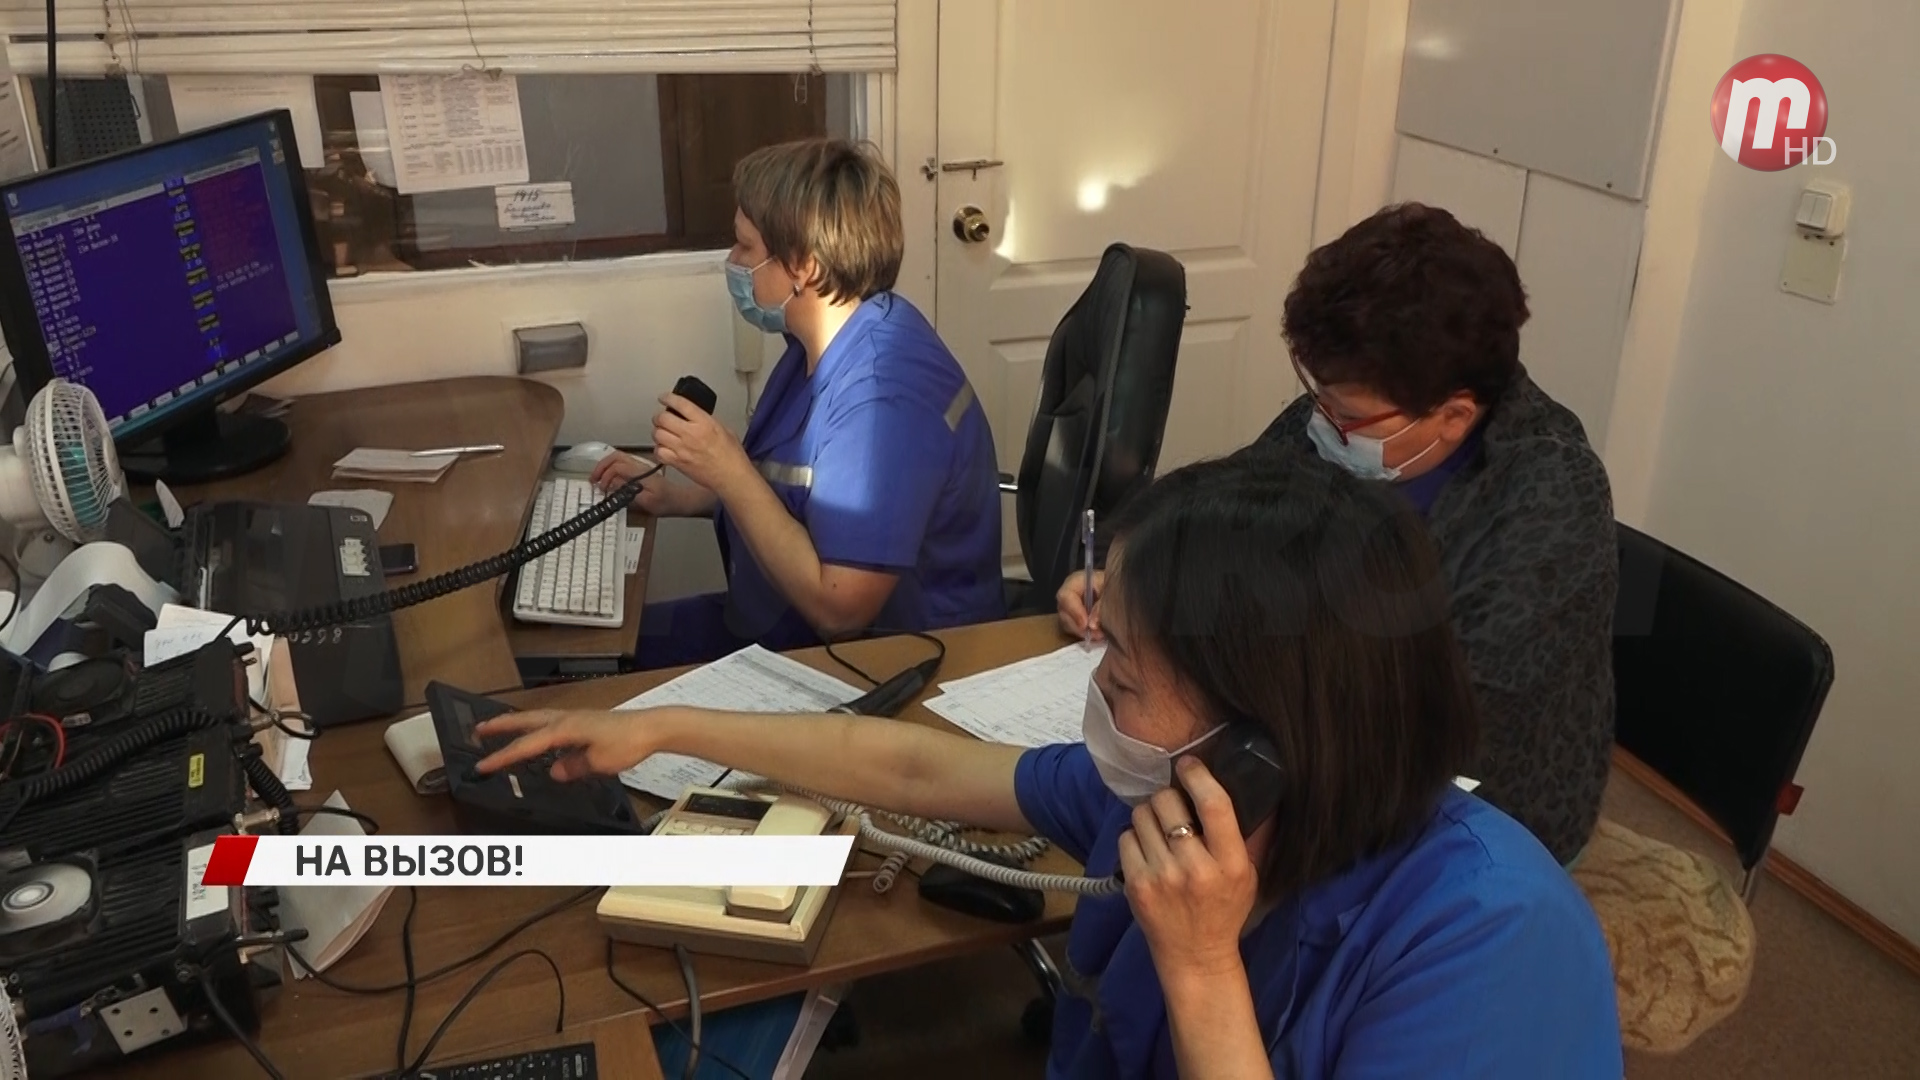 До полторы тысячи звонков в день. Служба скорой помощи Улан-Удэ вышла на рекордную загруженность